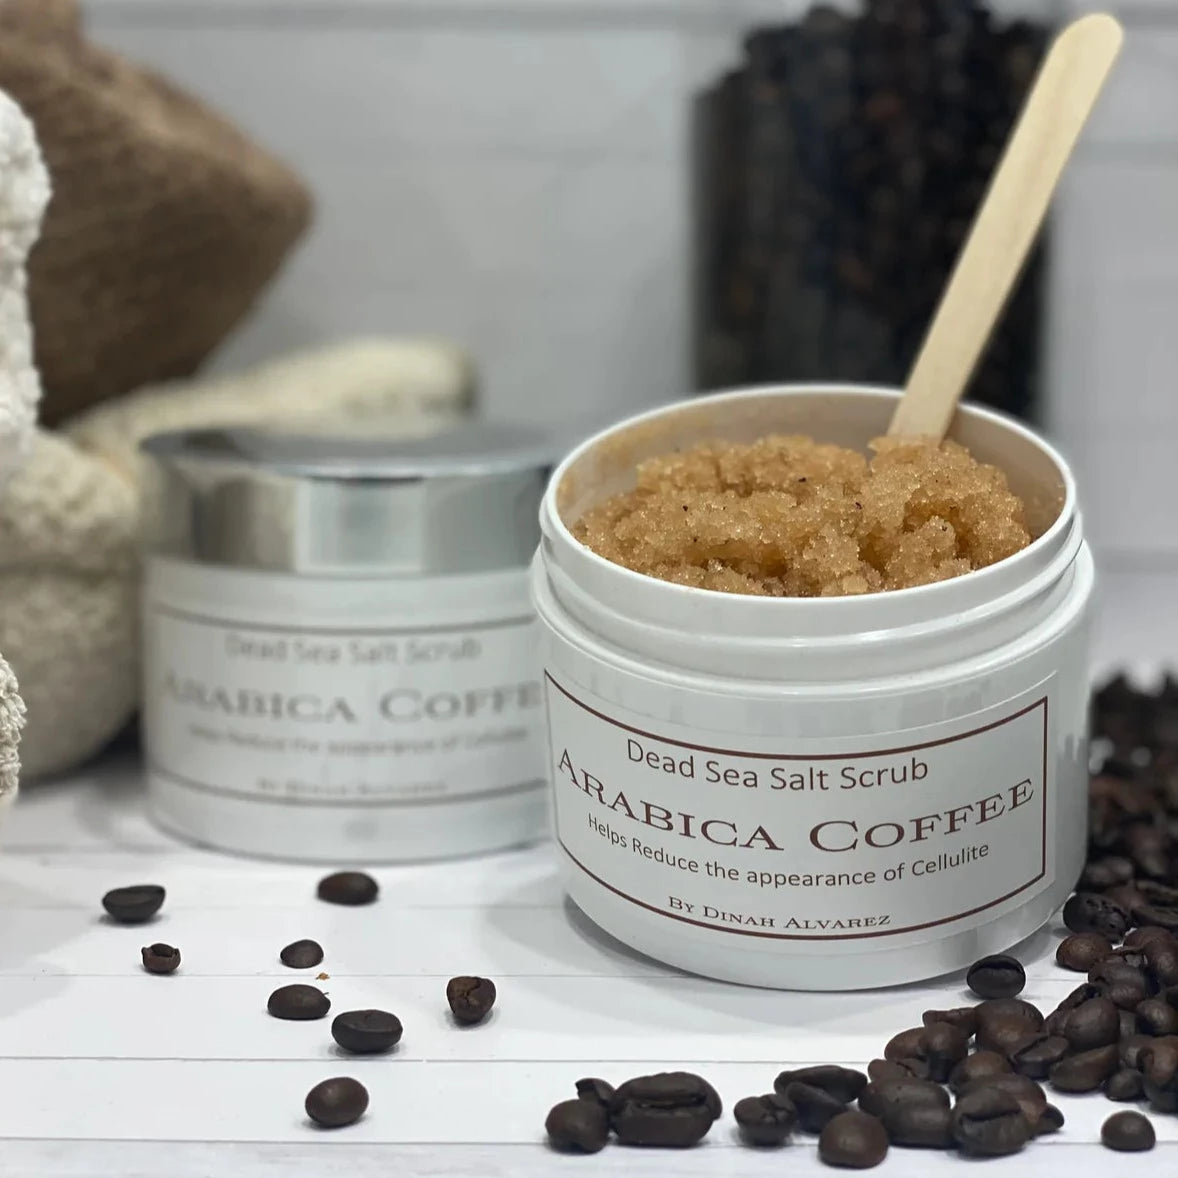 Dead Sea Salt Scrub with Arabica Coffee